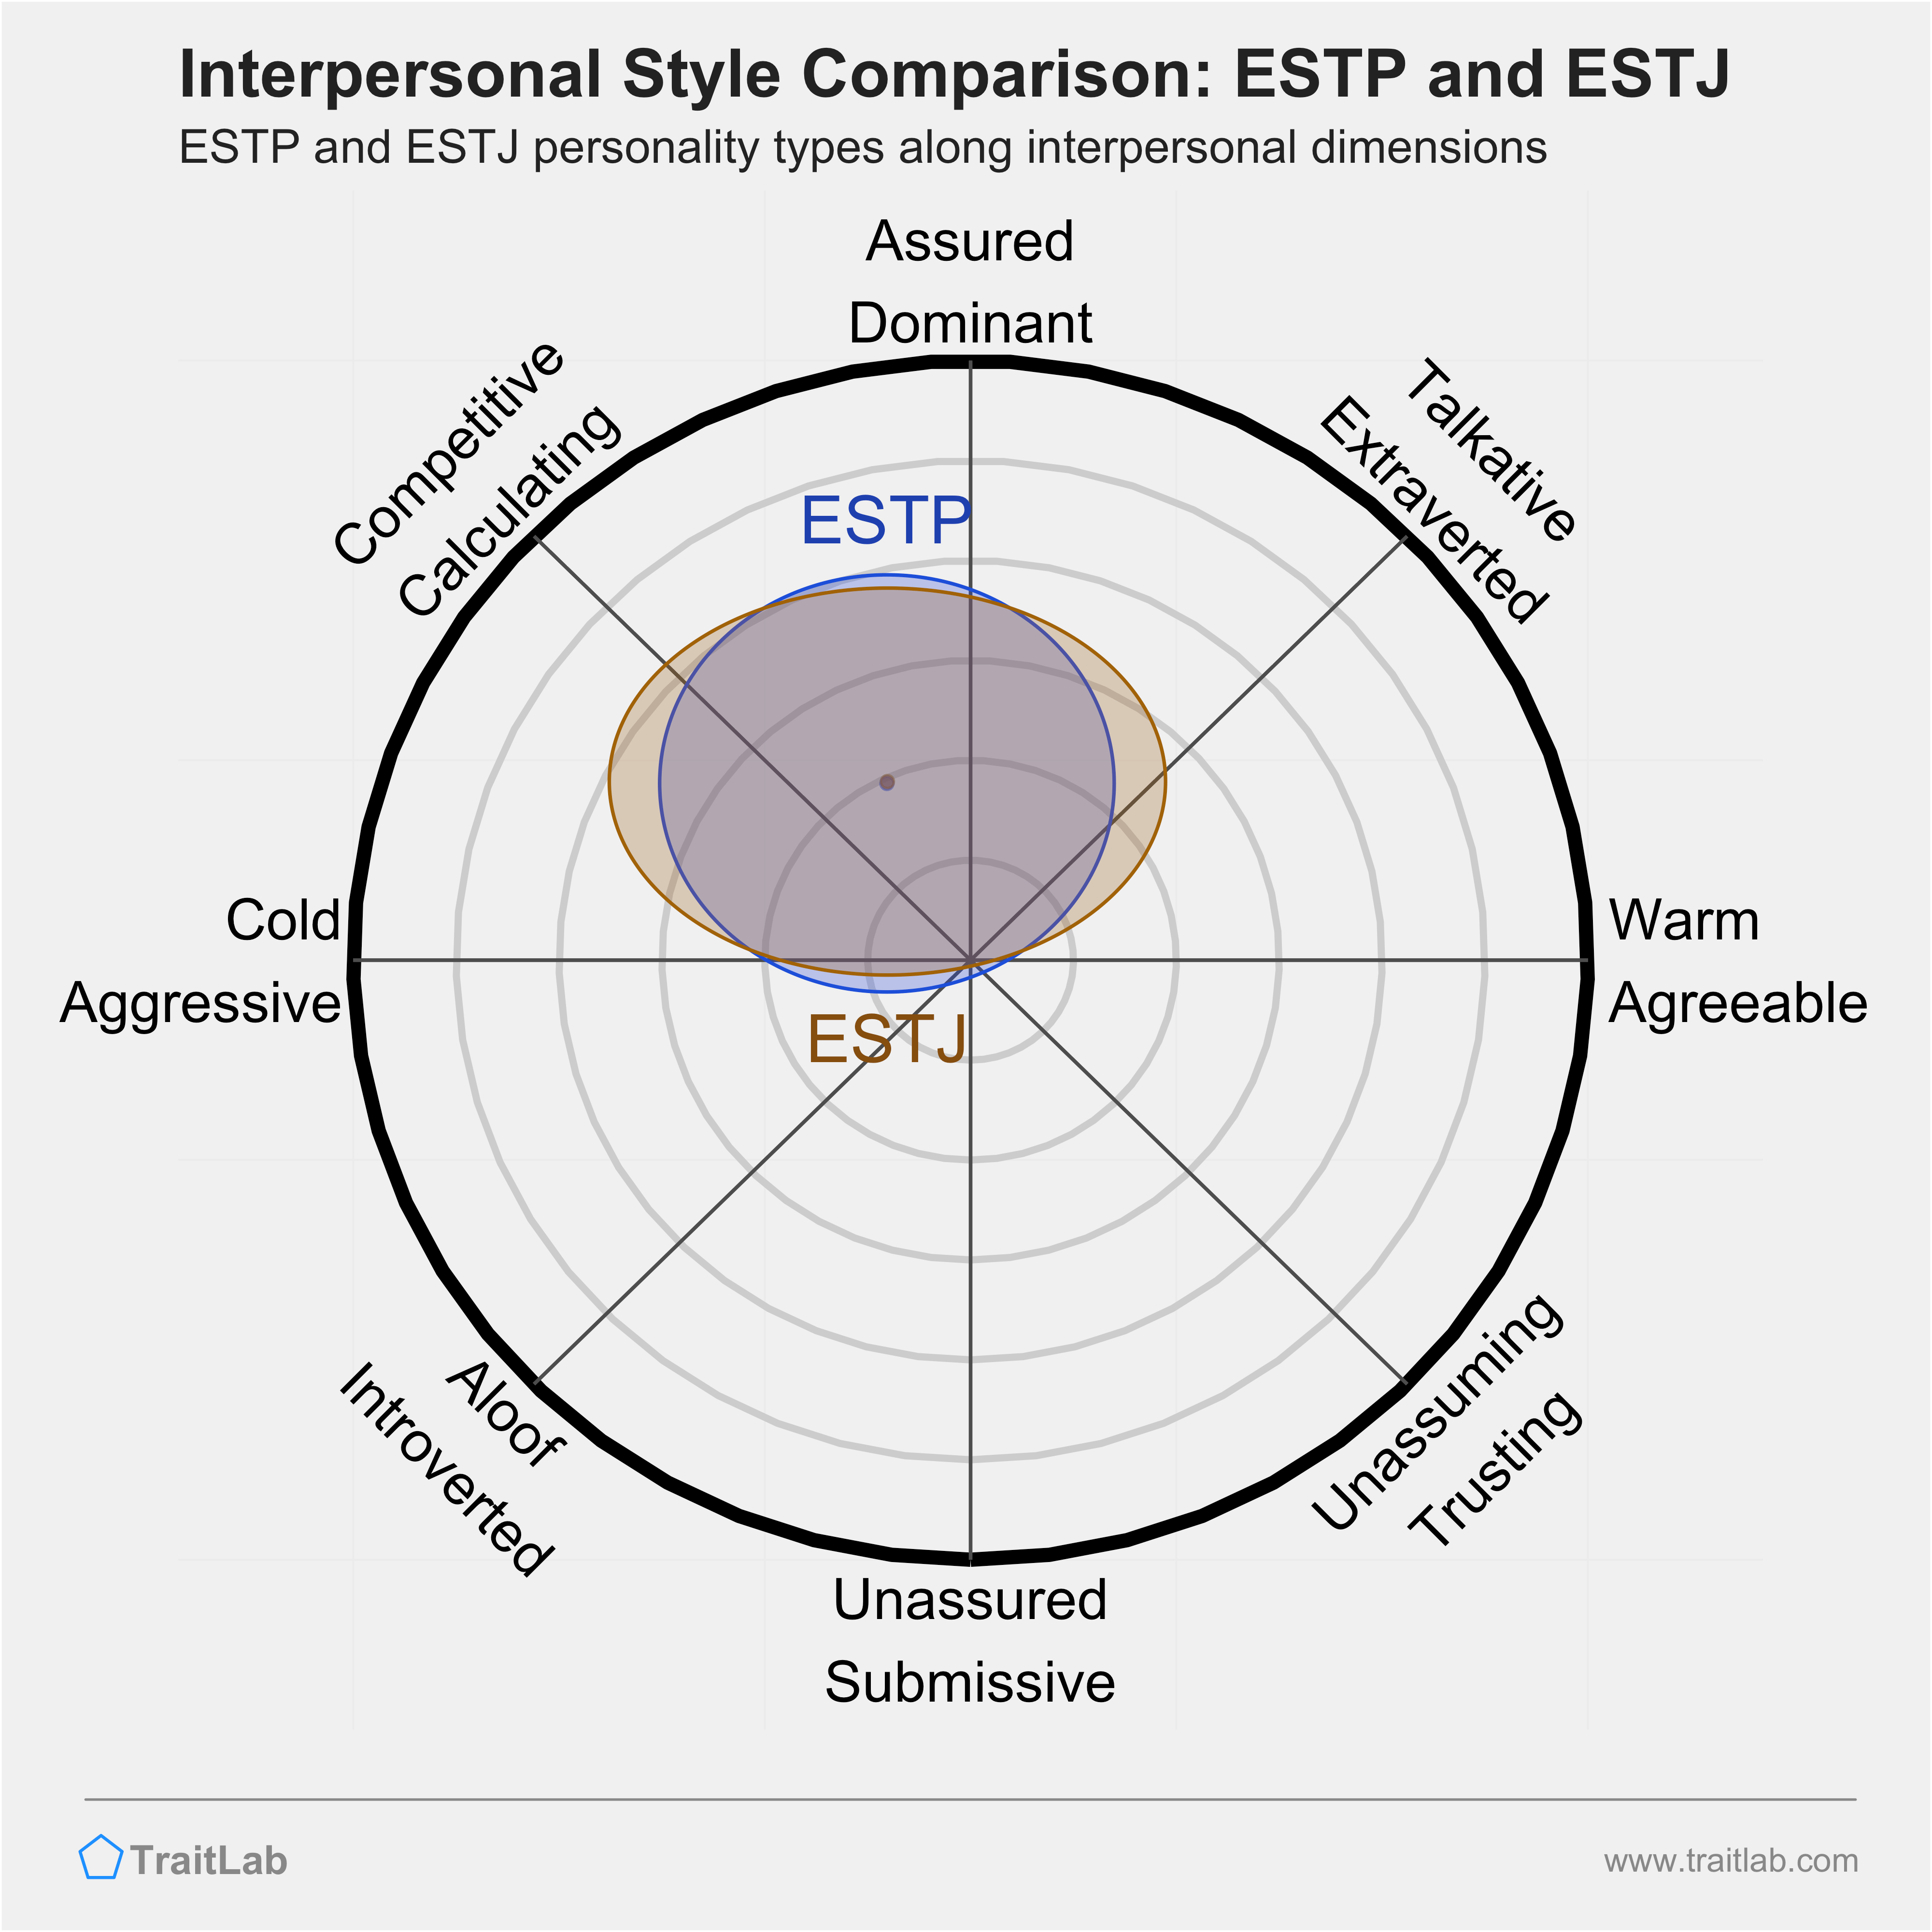 ESTP and ESTJ comparison across interpersonal dimensions